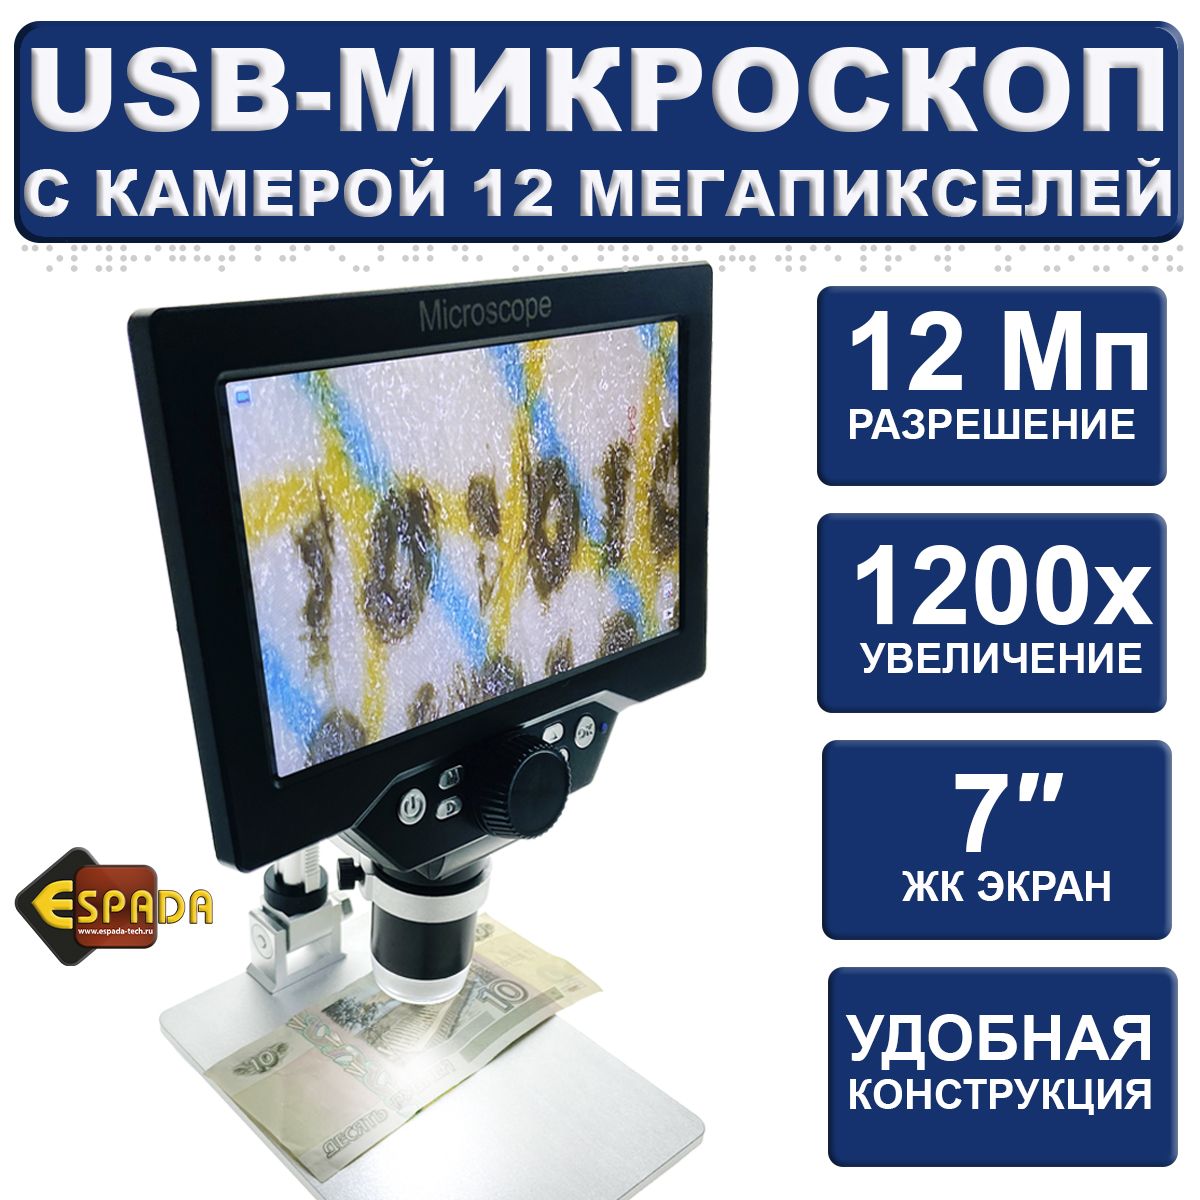 Микроскоп монокуляр Espada USB G1200B с дисплеем 7 и подставкой цифровой микроскоп digimicro dm700 с большим жк дисплеем и записью для прикладных работ